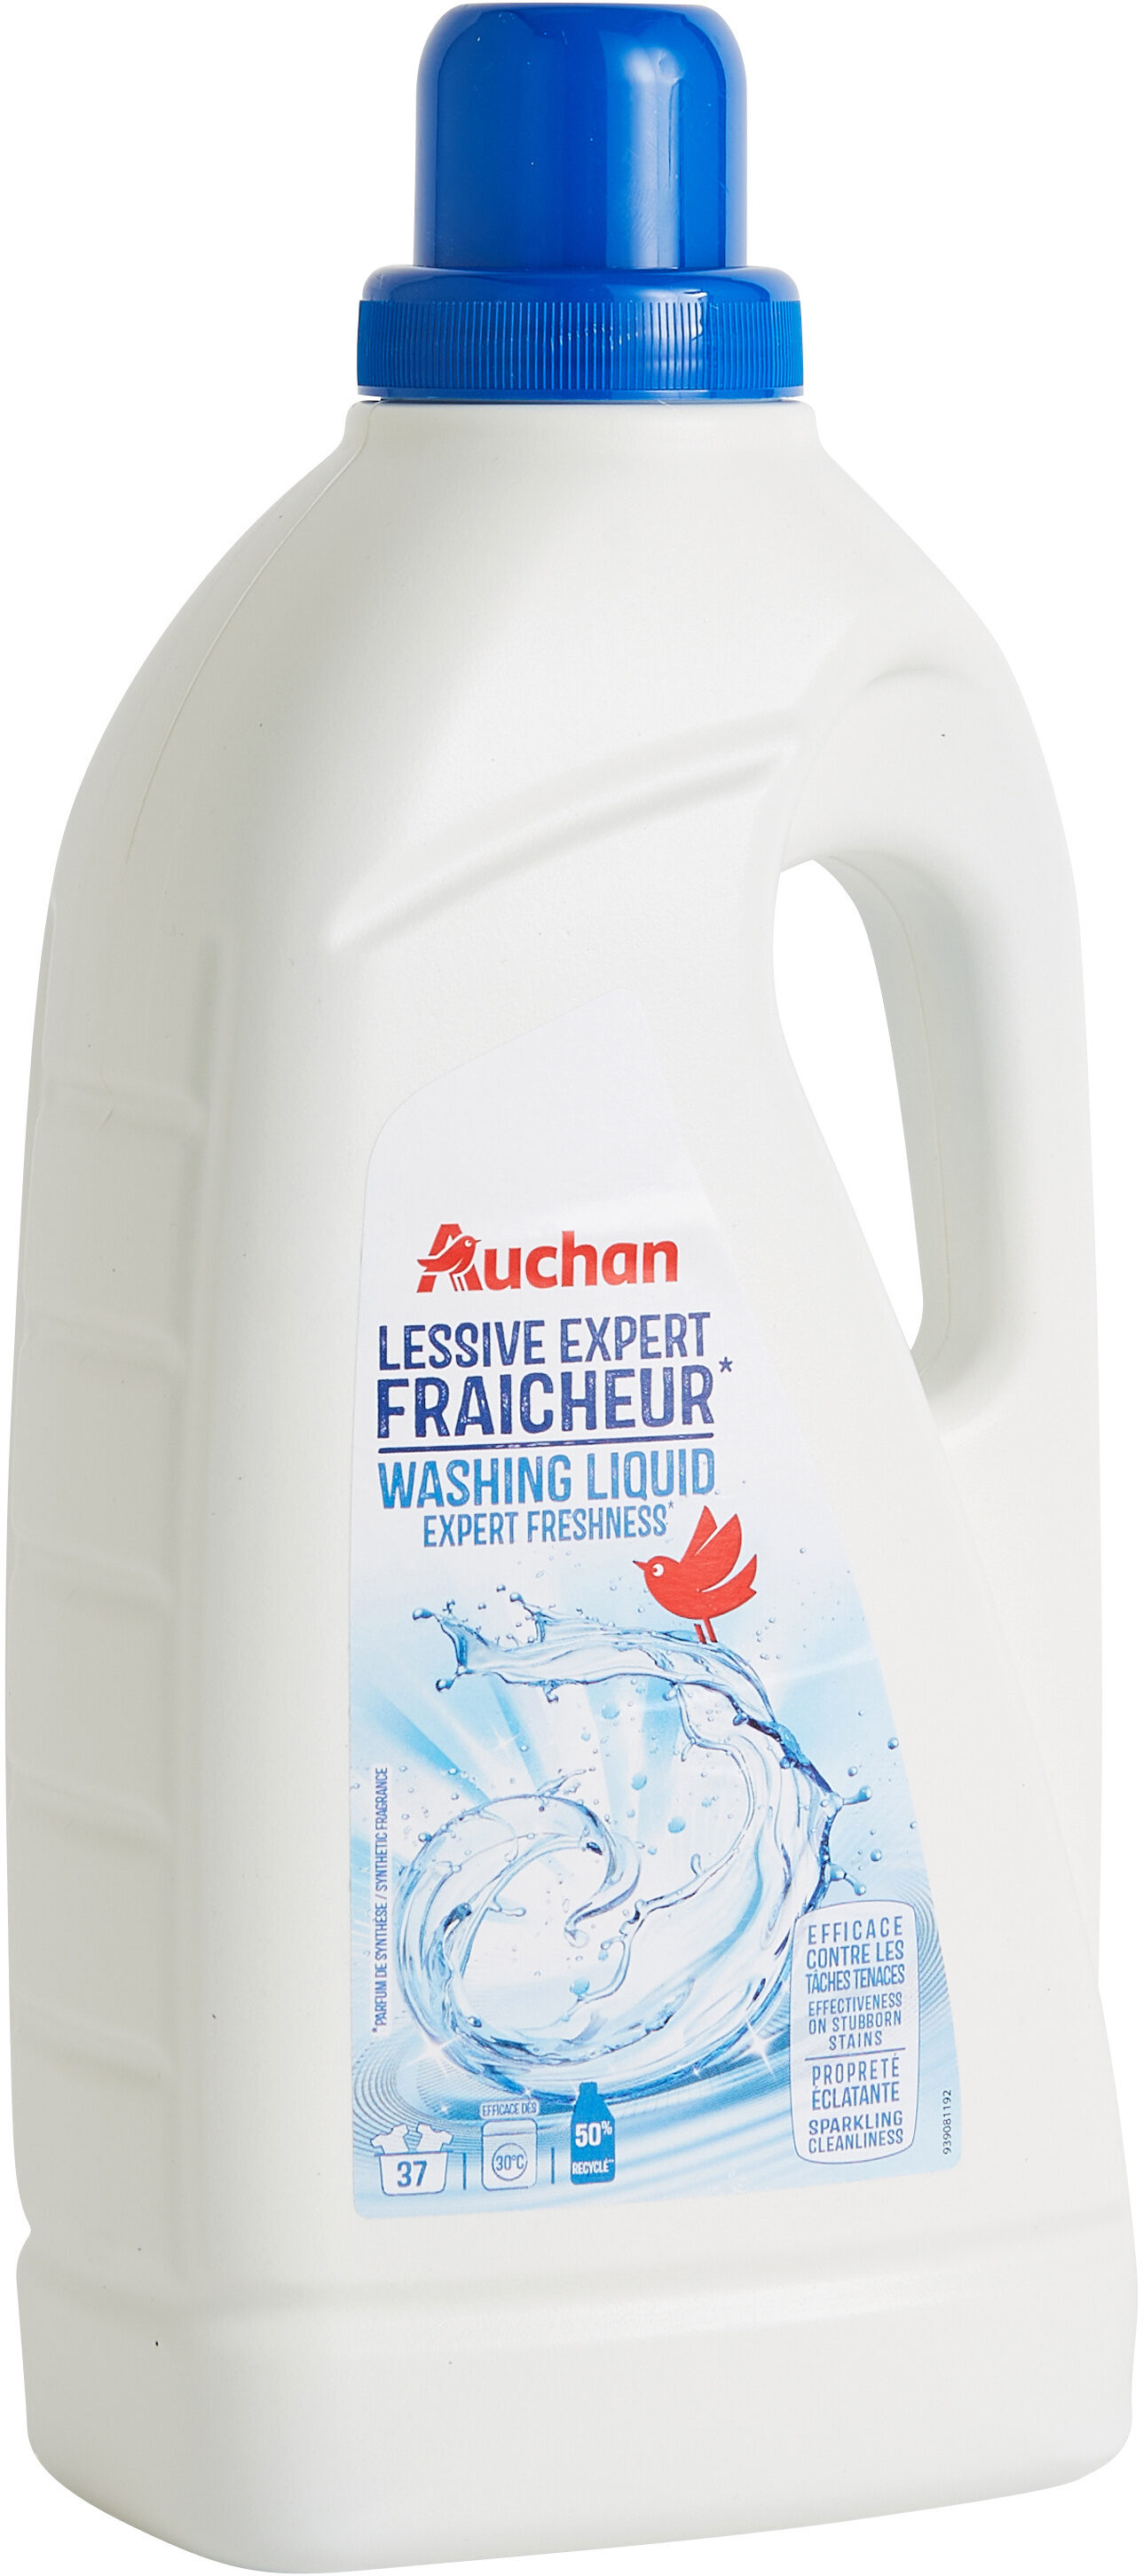 Lessive liquide Expert Fraîcheur - Produit - fr